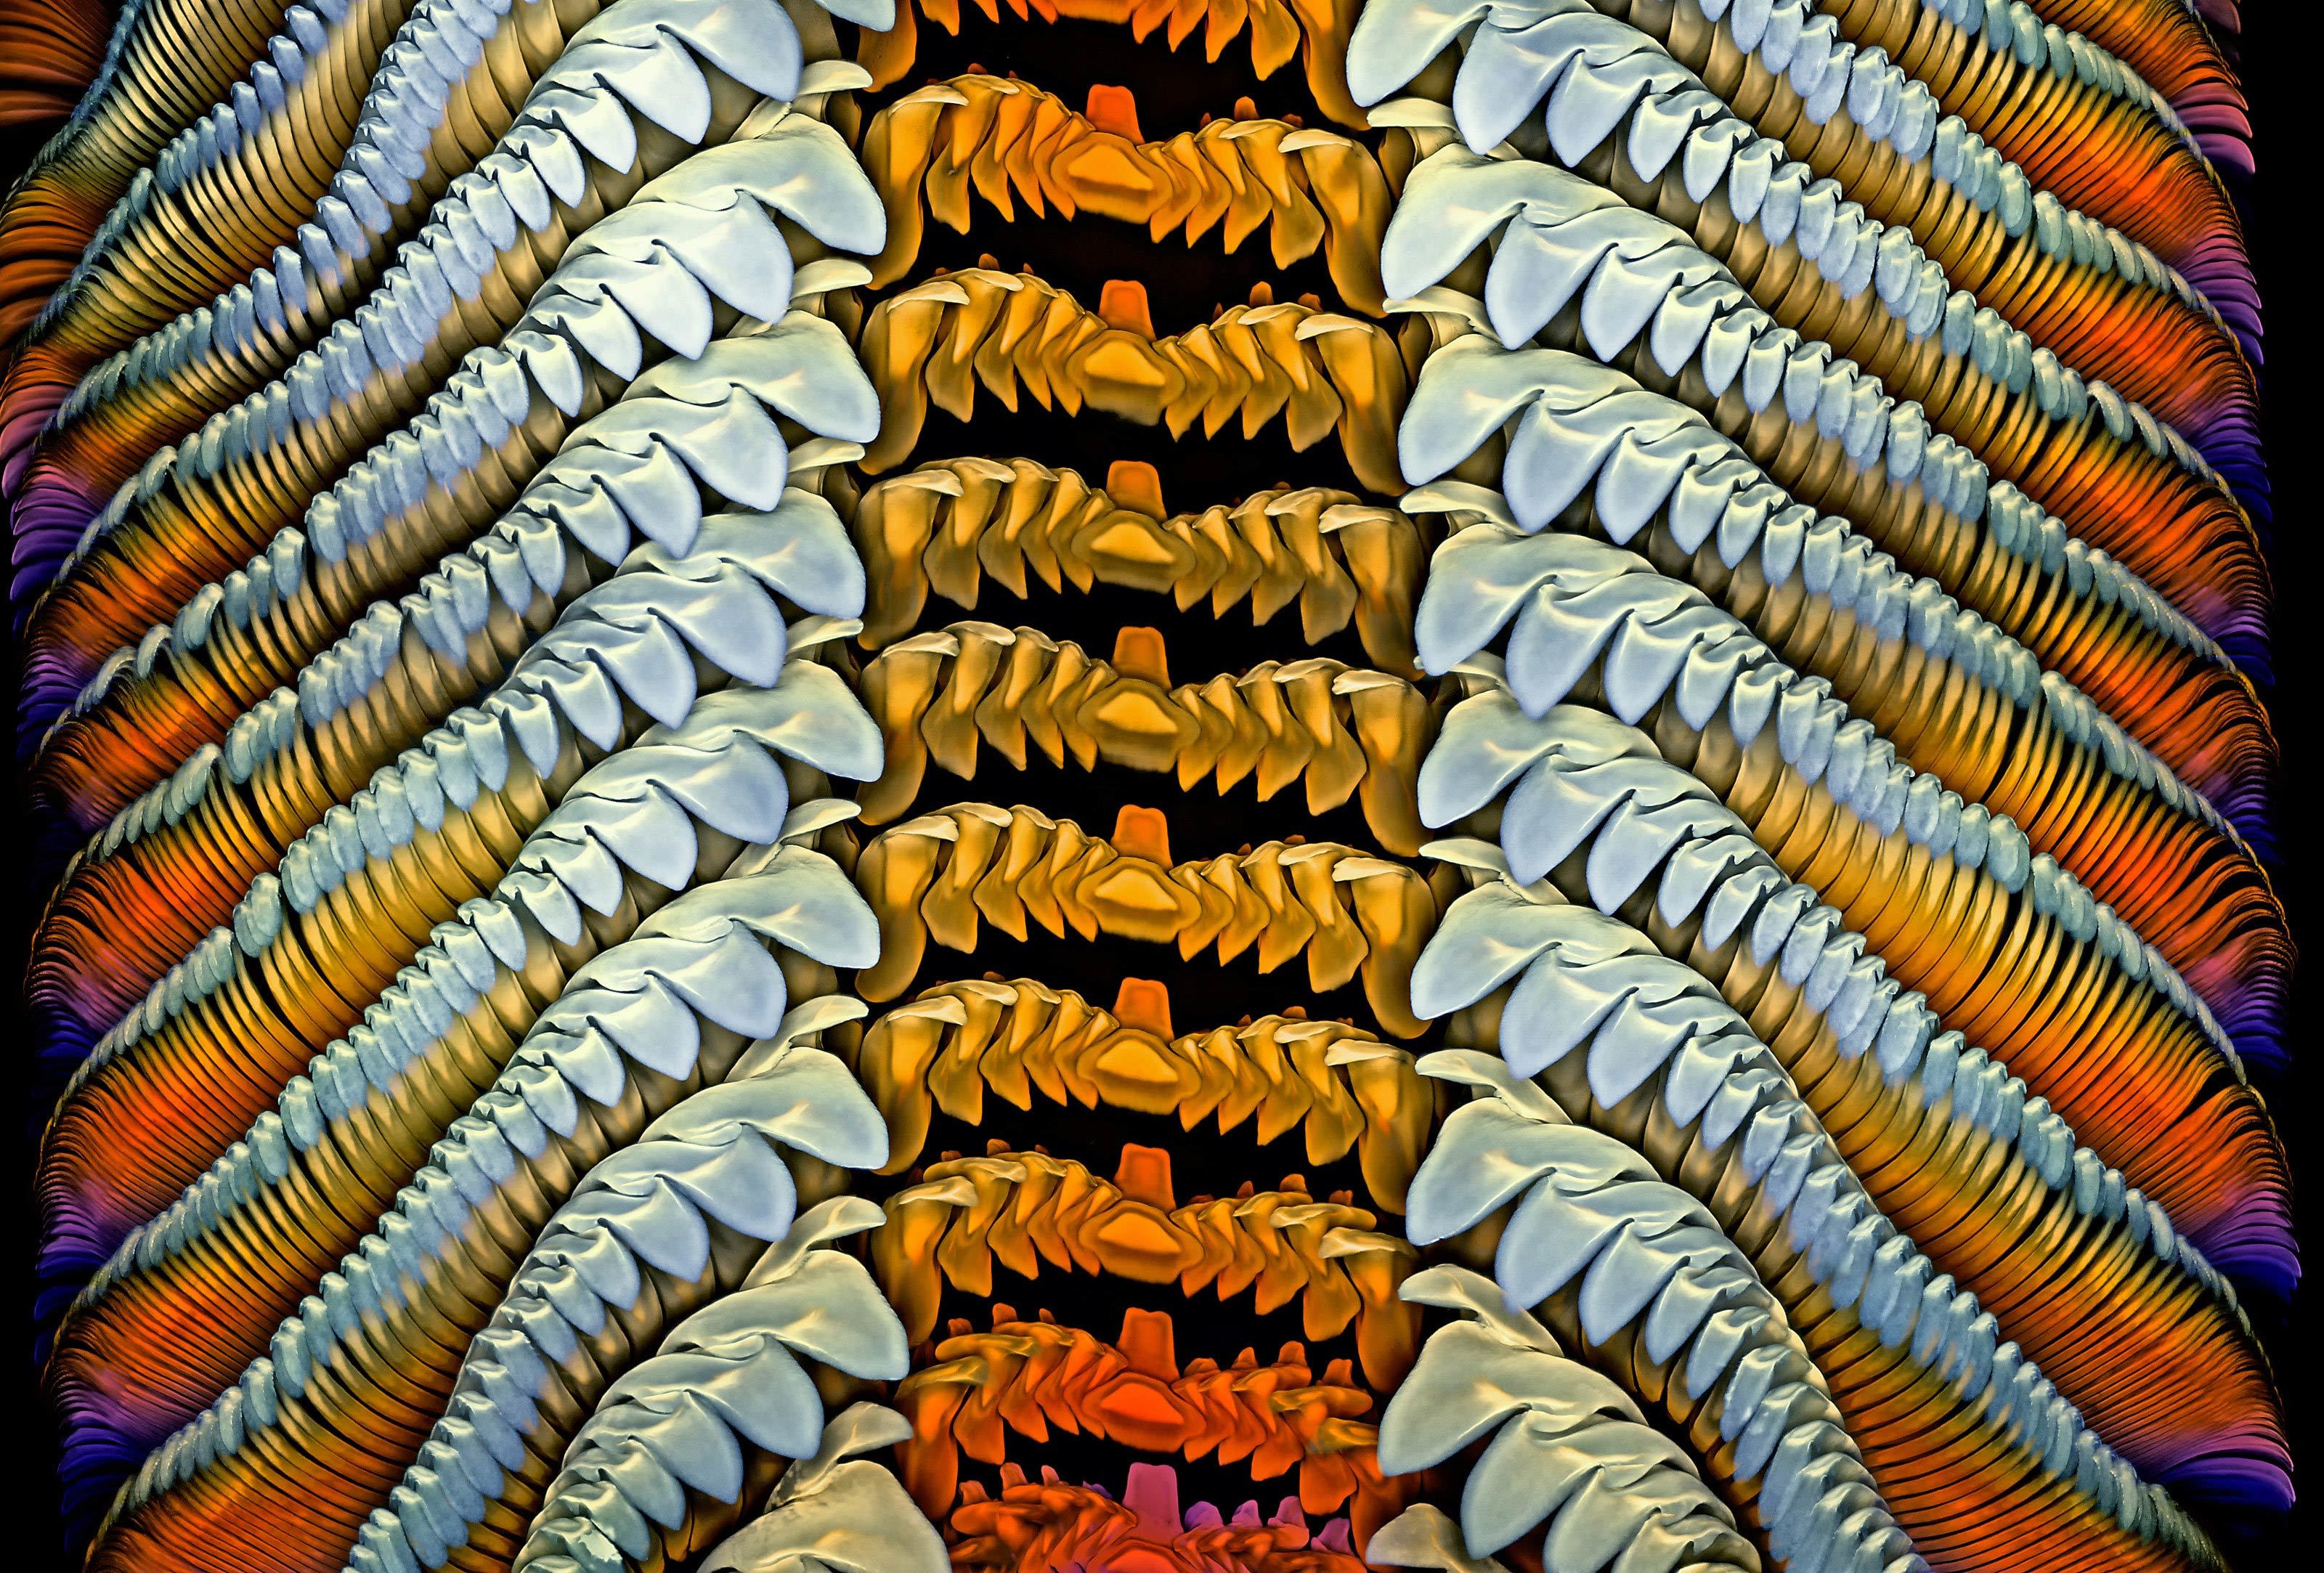 Photo microscopique d'une langue d'escargot des mers formant des tiges très colorées et parallèles.